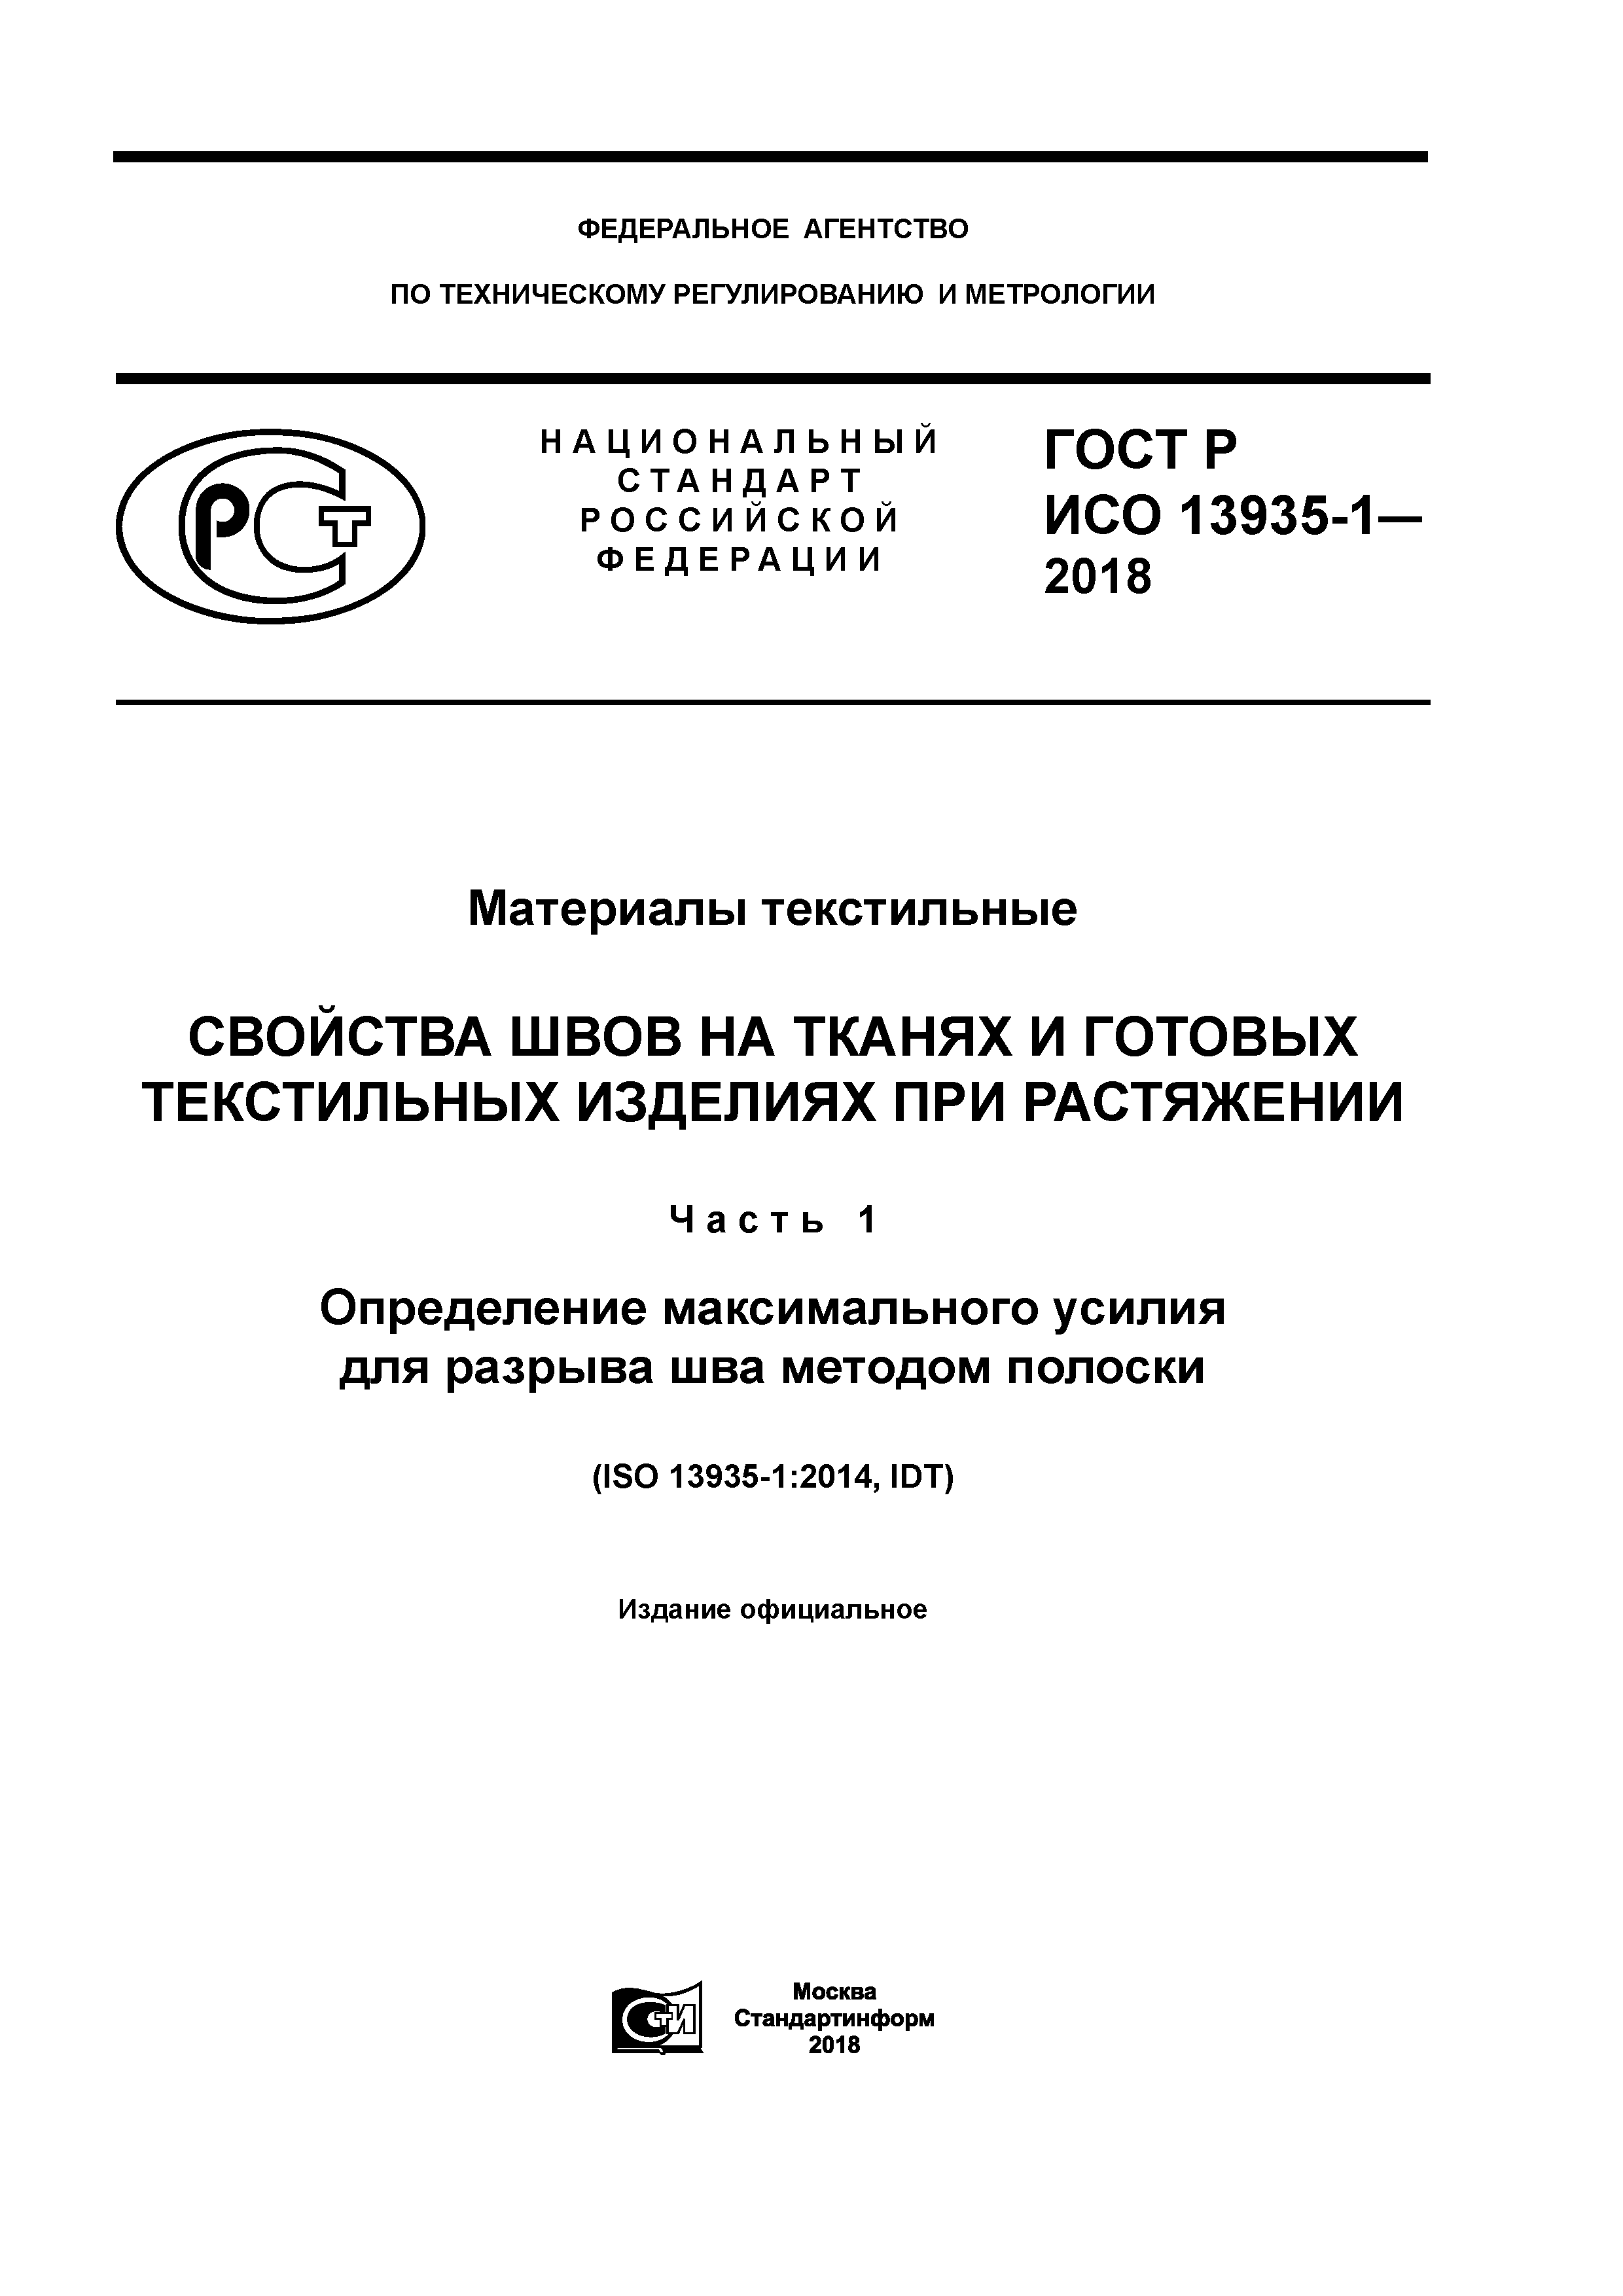 ГОСТ Р ИСО 13935-1-2018